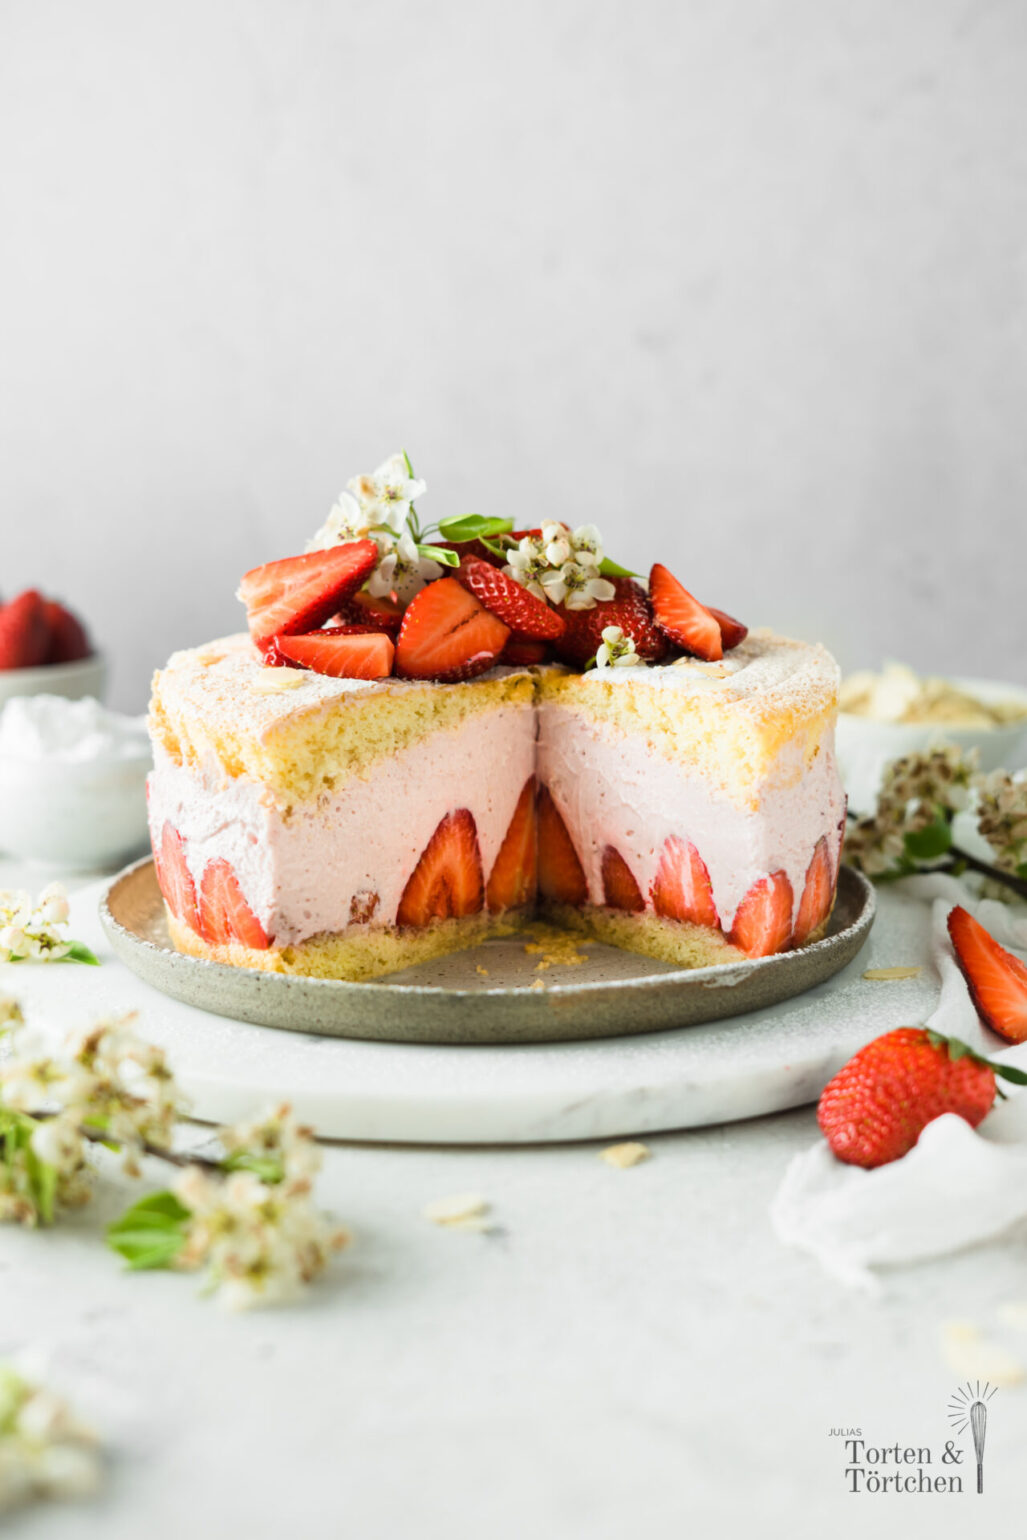 Einfaches Rezept für eine fruchtige Käse Sahne Torte mit frischen Erdbeeren. Diese kleine Käse Sahne Torte ist super leicht gemacht und schmeckt super fruchtig nach Erdbeeren! #Erdbeeren #Erdbeertorte #KäseSahne #Torte #Saisonal #Käsekuchen #Biskuit